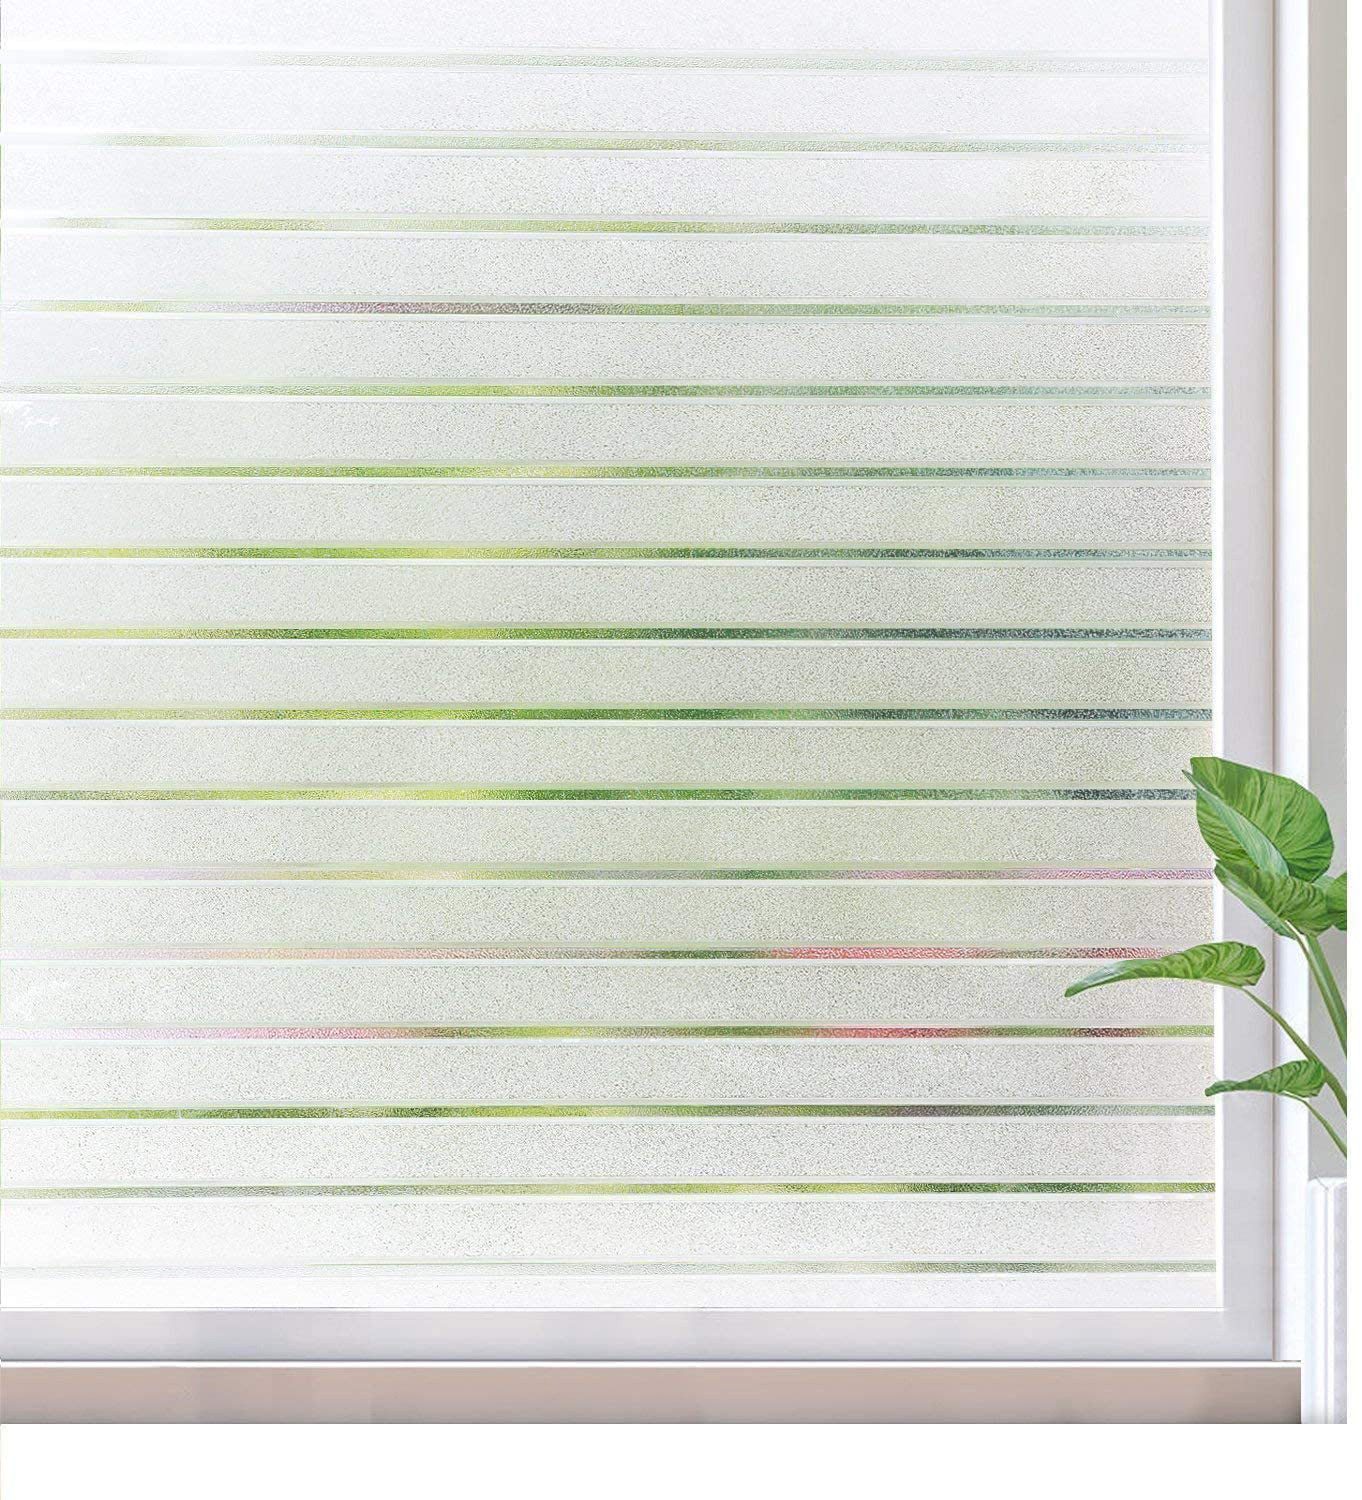 Fensterfolie Blickdicht Streifen Sichtschutzfolie Selbstklebend Milchglasfolie, Caterize, halbtransparent